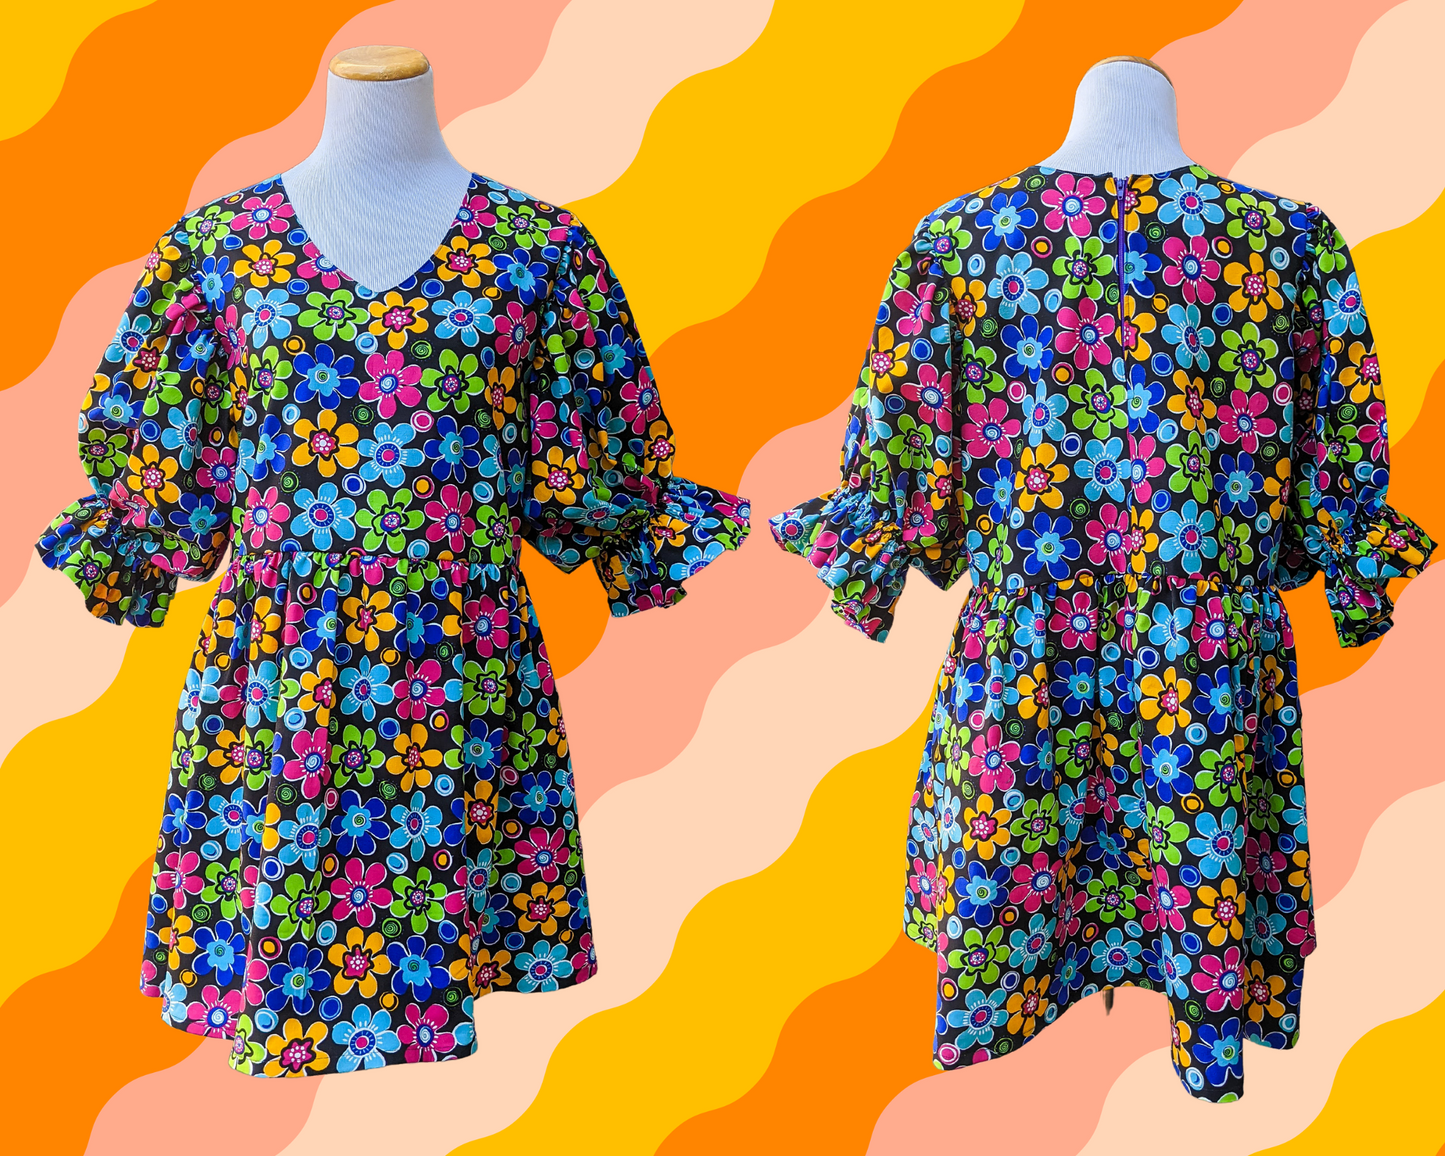 Fait à la main, Upcycled Vintage 1990's Colorful Flower Power, Robe en tissu à motifs groovy avec manches bouffantes mi-longues, Taille L/XL